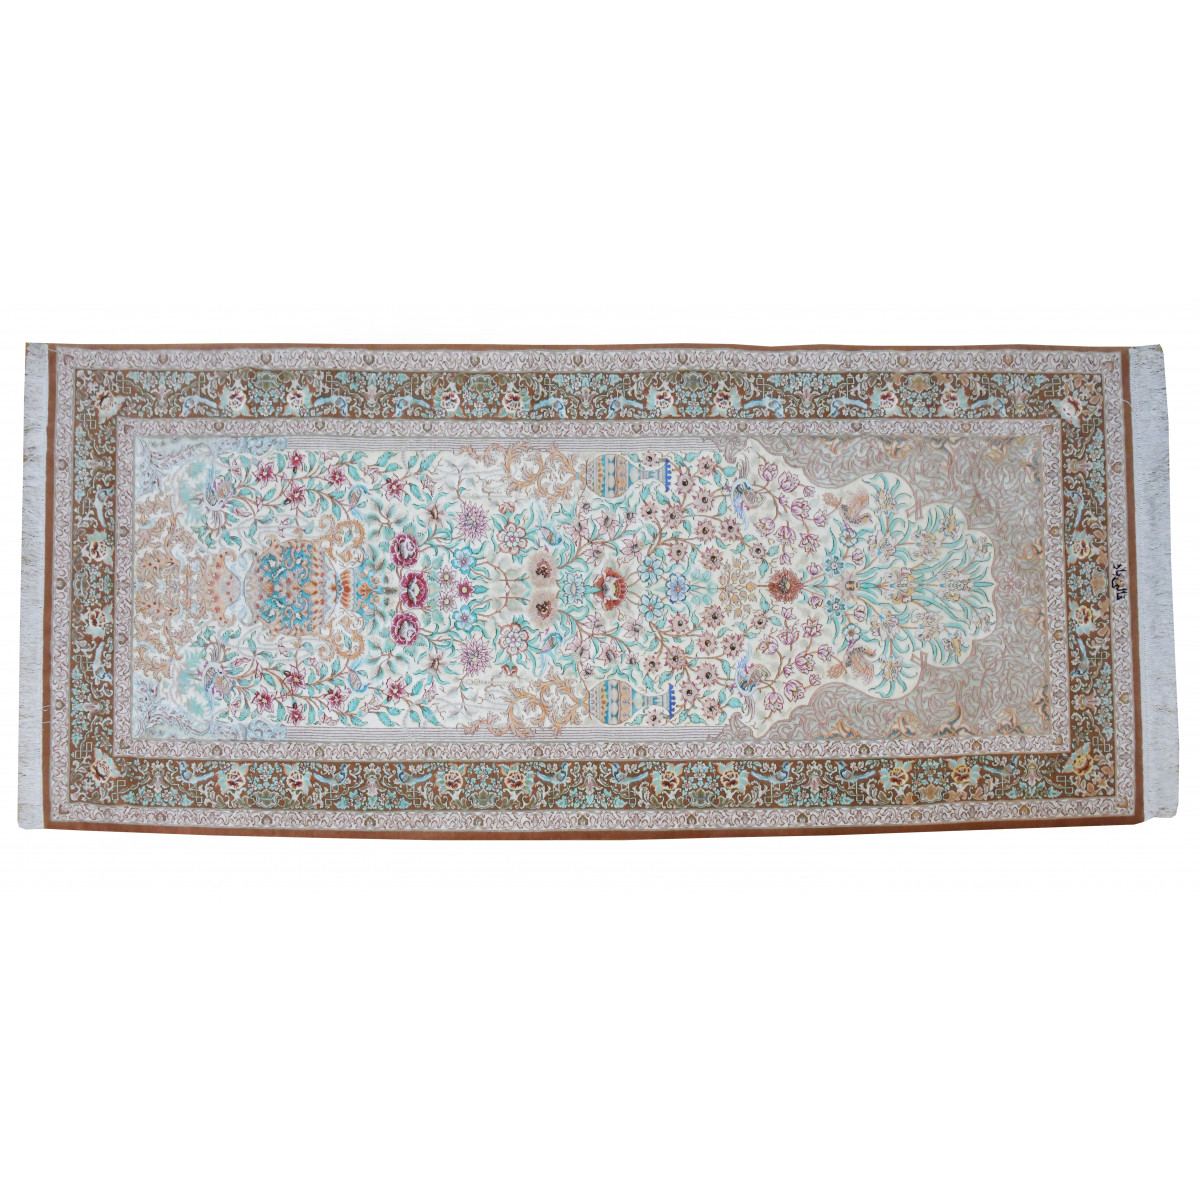 キミヤペルシャ絨毯ギャラリー | KIMIYA PERSIAN CARPET GALLERY